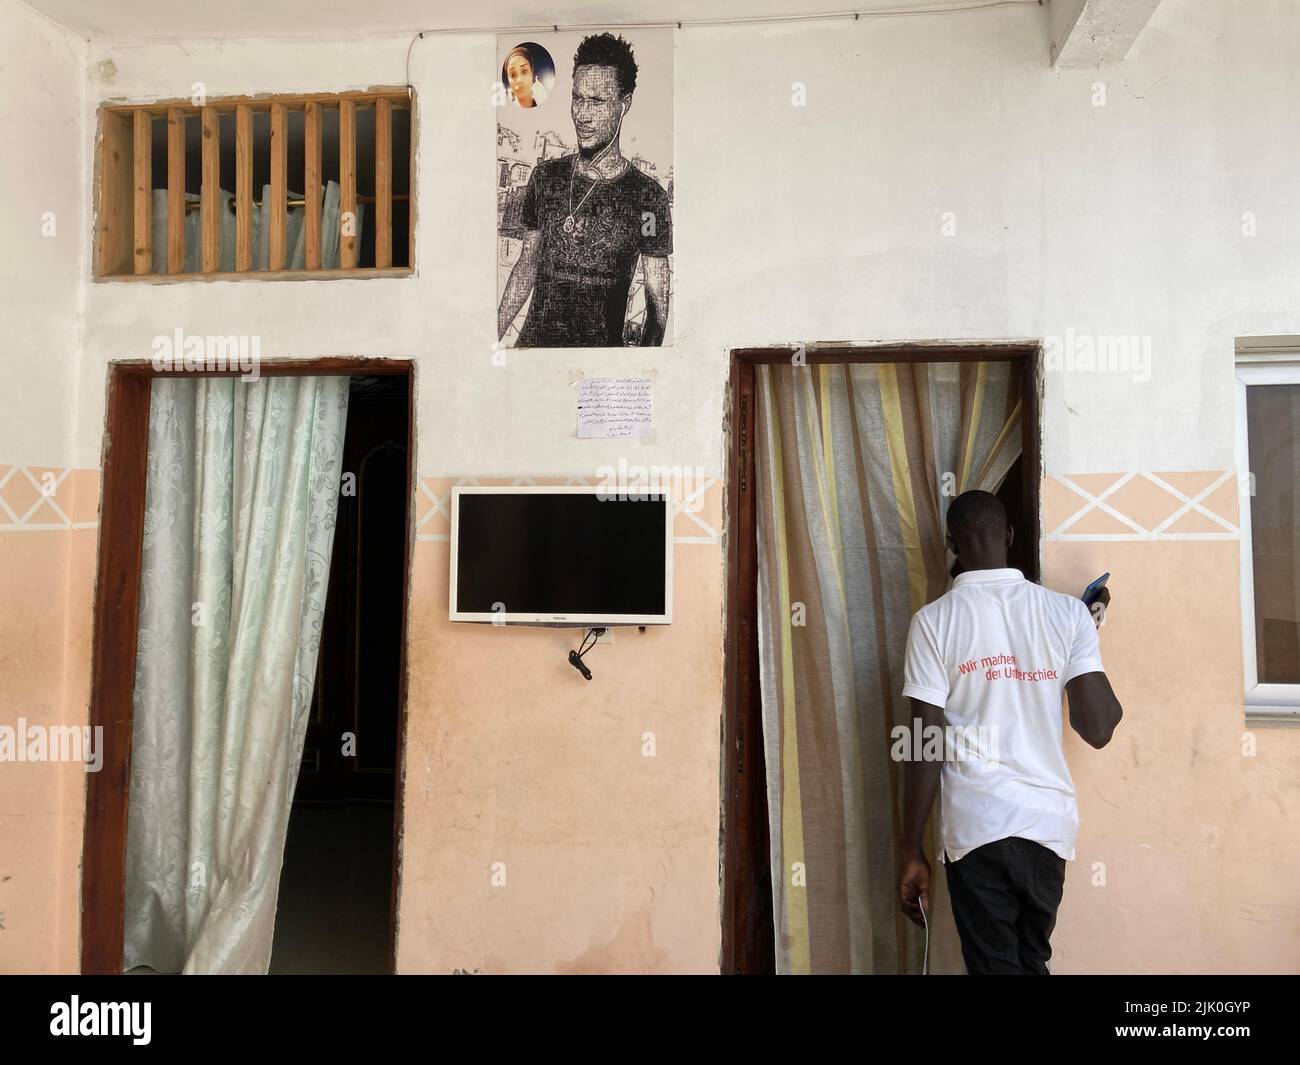 PRODUKTION - 21. Juli 2022, Senegal, Dakar: Abdoulaye Wade, fotografiert in seinem Haus am Stadtrand, geht an einem Bild seines Bruders Cheikh Wade vorbei. Wade wurde letztes Jahr bei Demonstrationen getötet. Senegal gilt als Stabilitätsanker für die krisengeschüttelte Sahelregion, in der auch die deutschen Streitkräfte aktiv sind. Bundeskanzler Scholz besuchte Senegal als erstes Land auf seiner Afrikareise, weil Erdgas bald nach Europa fließen wird. Aber in Westafrikas Vorzeigedemokratie brodelt es über. (An dpa 'Deutschlands neuer Partner Senegal: Demokratie unter Druck') Phot Stockfoto